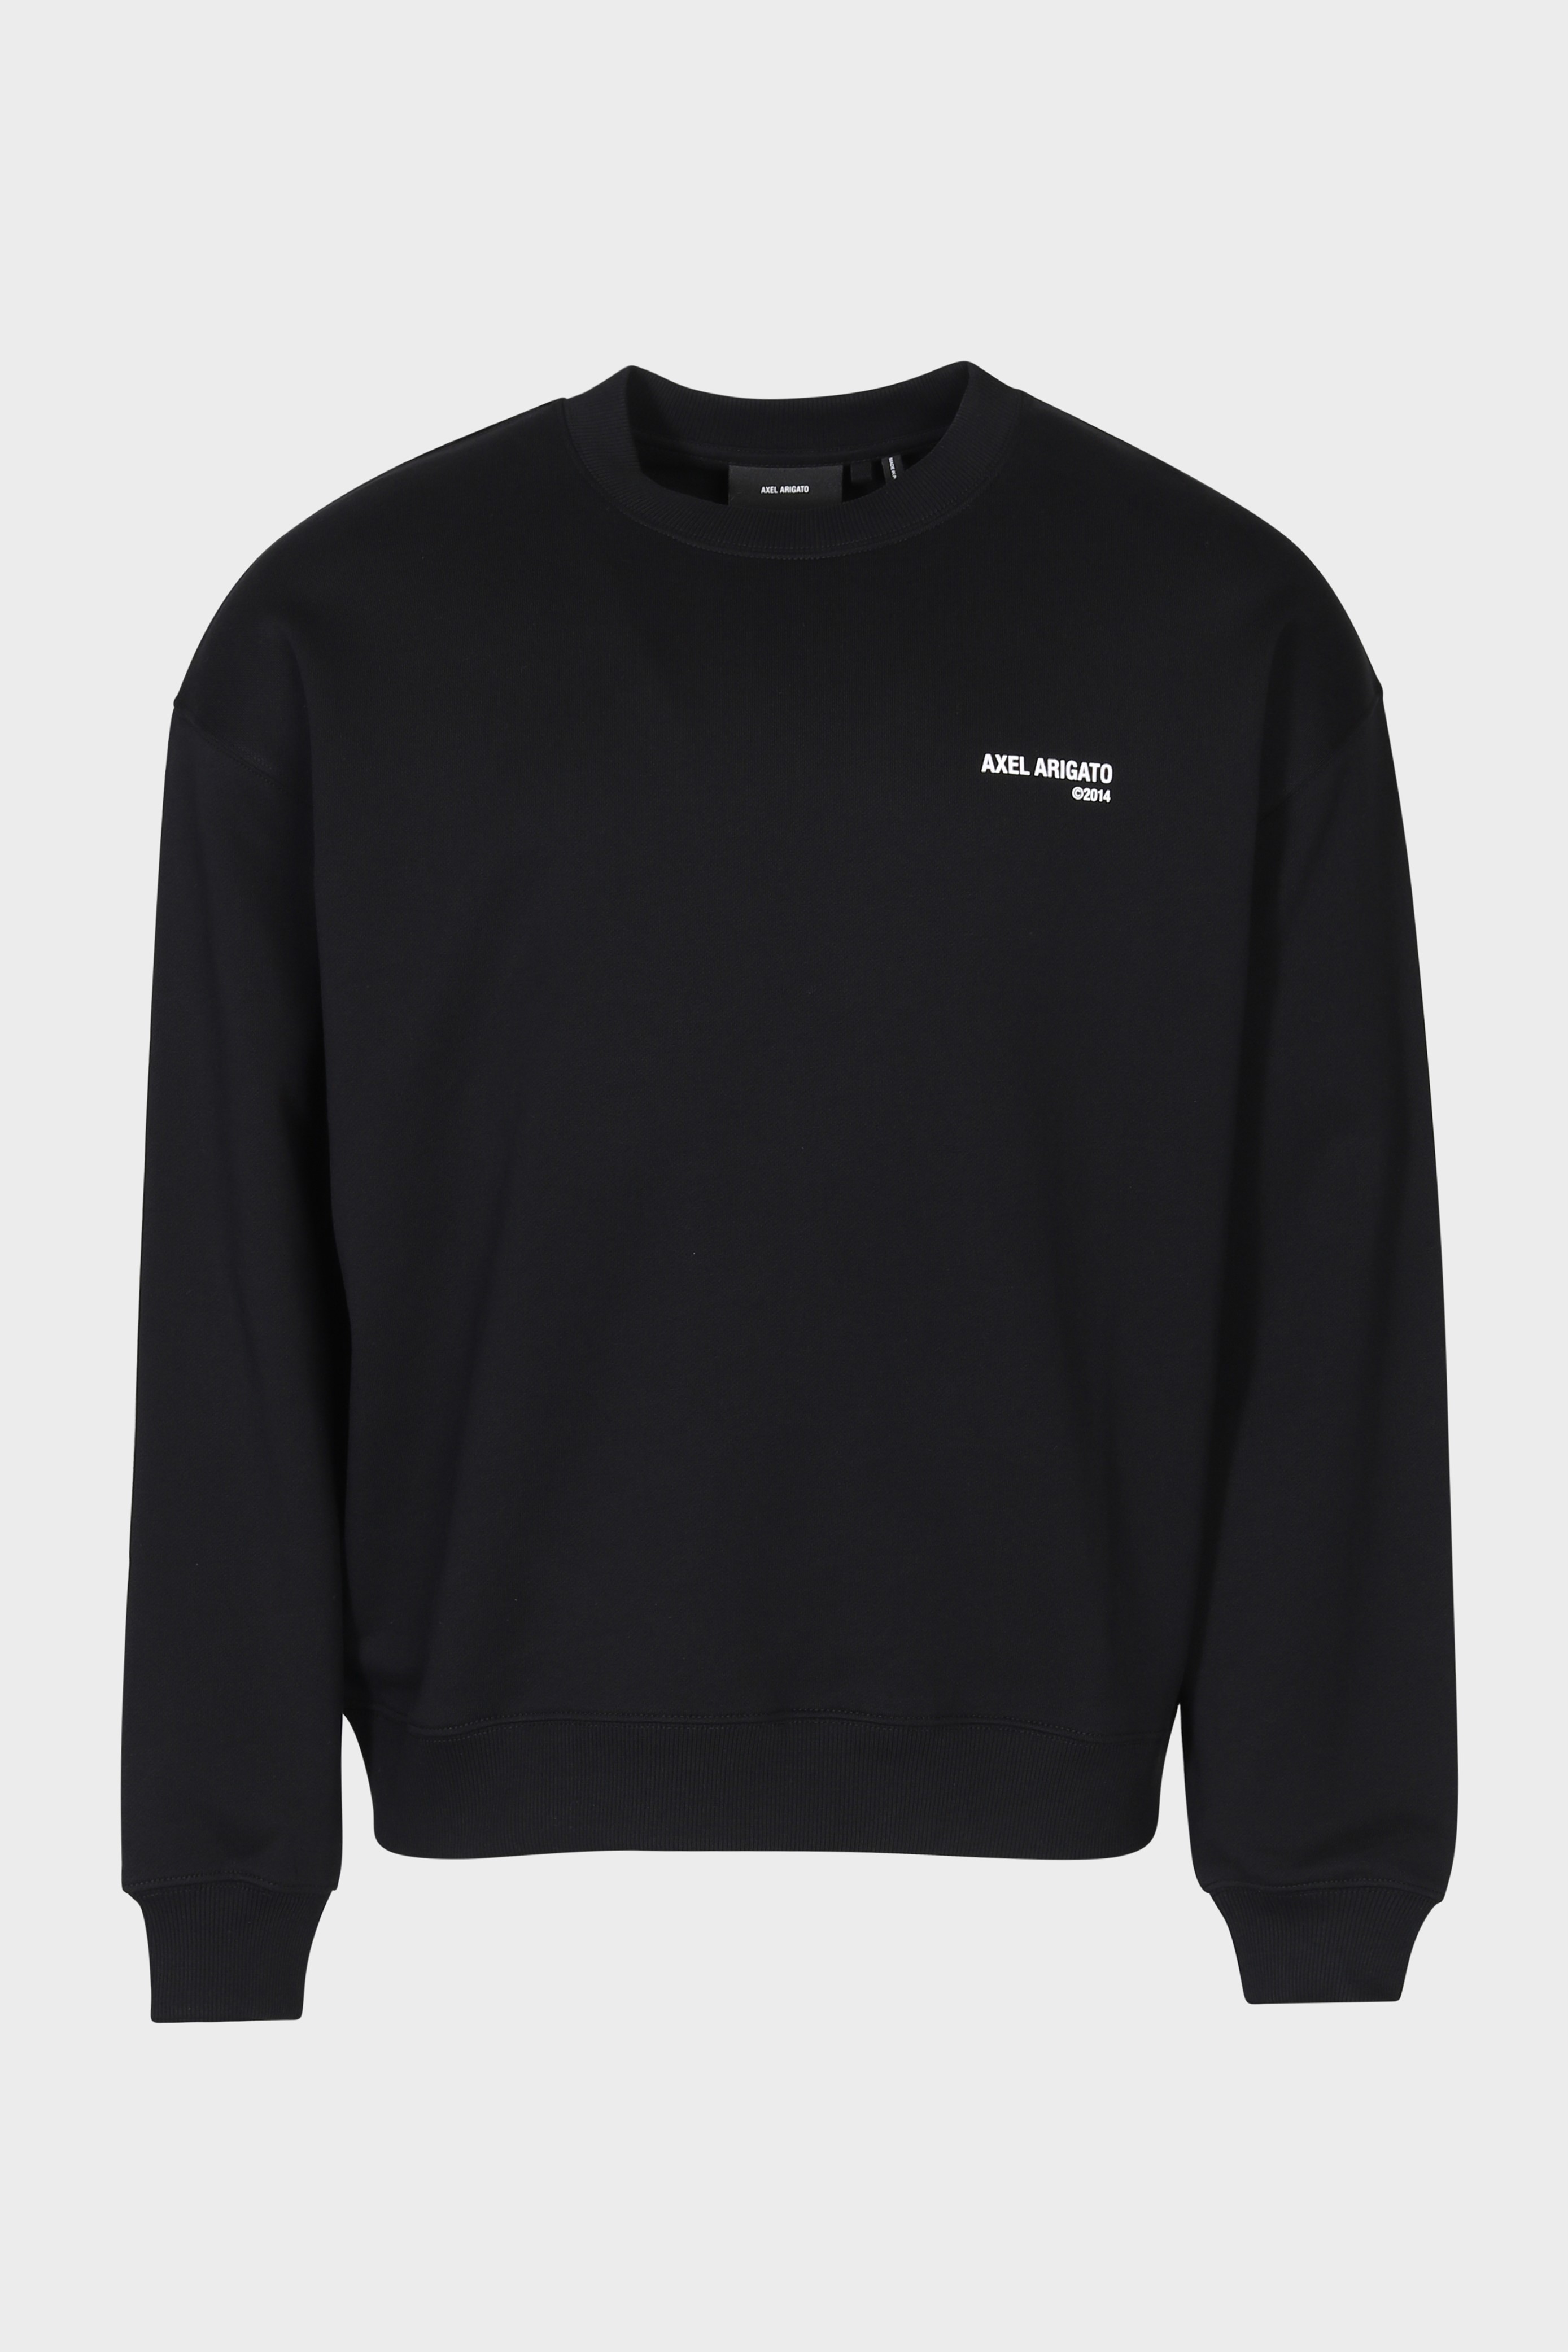 AXEL ARIGATO Spade Sweatshirt in Black